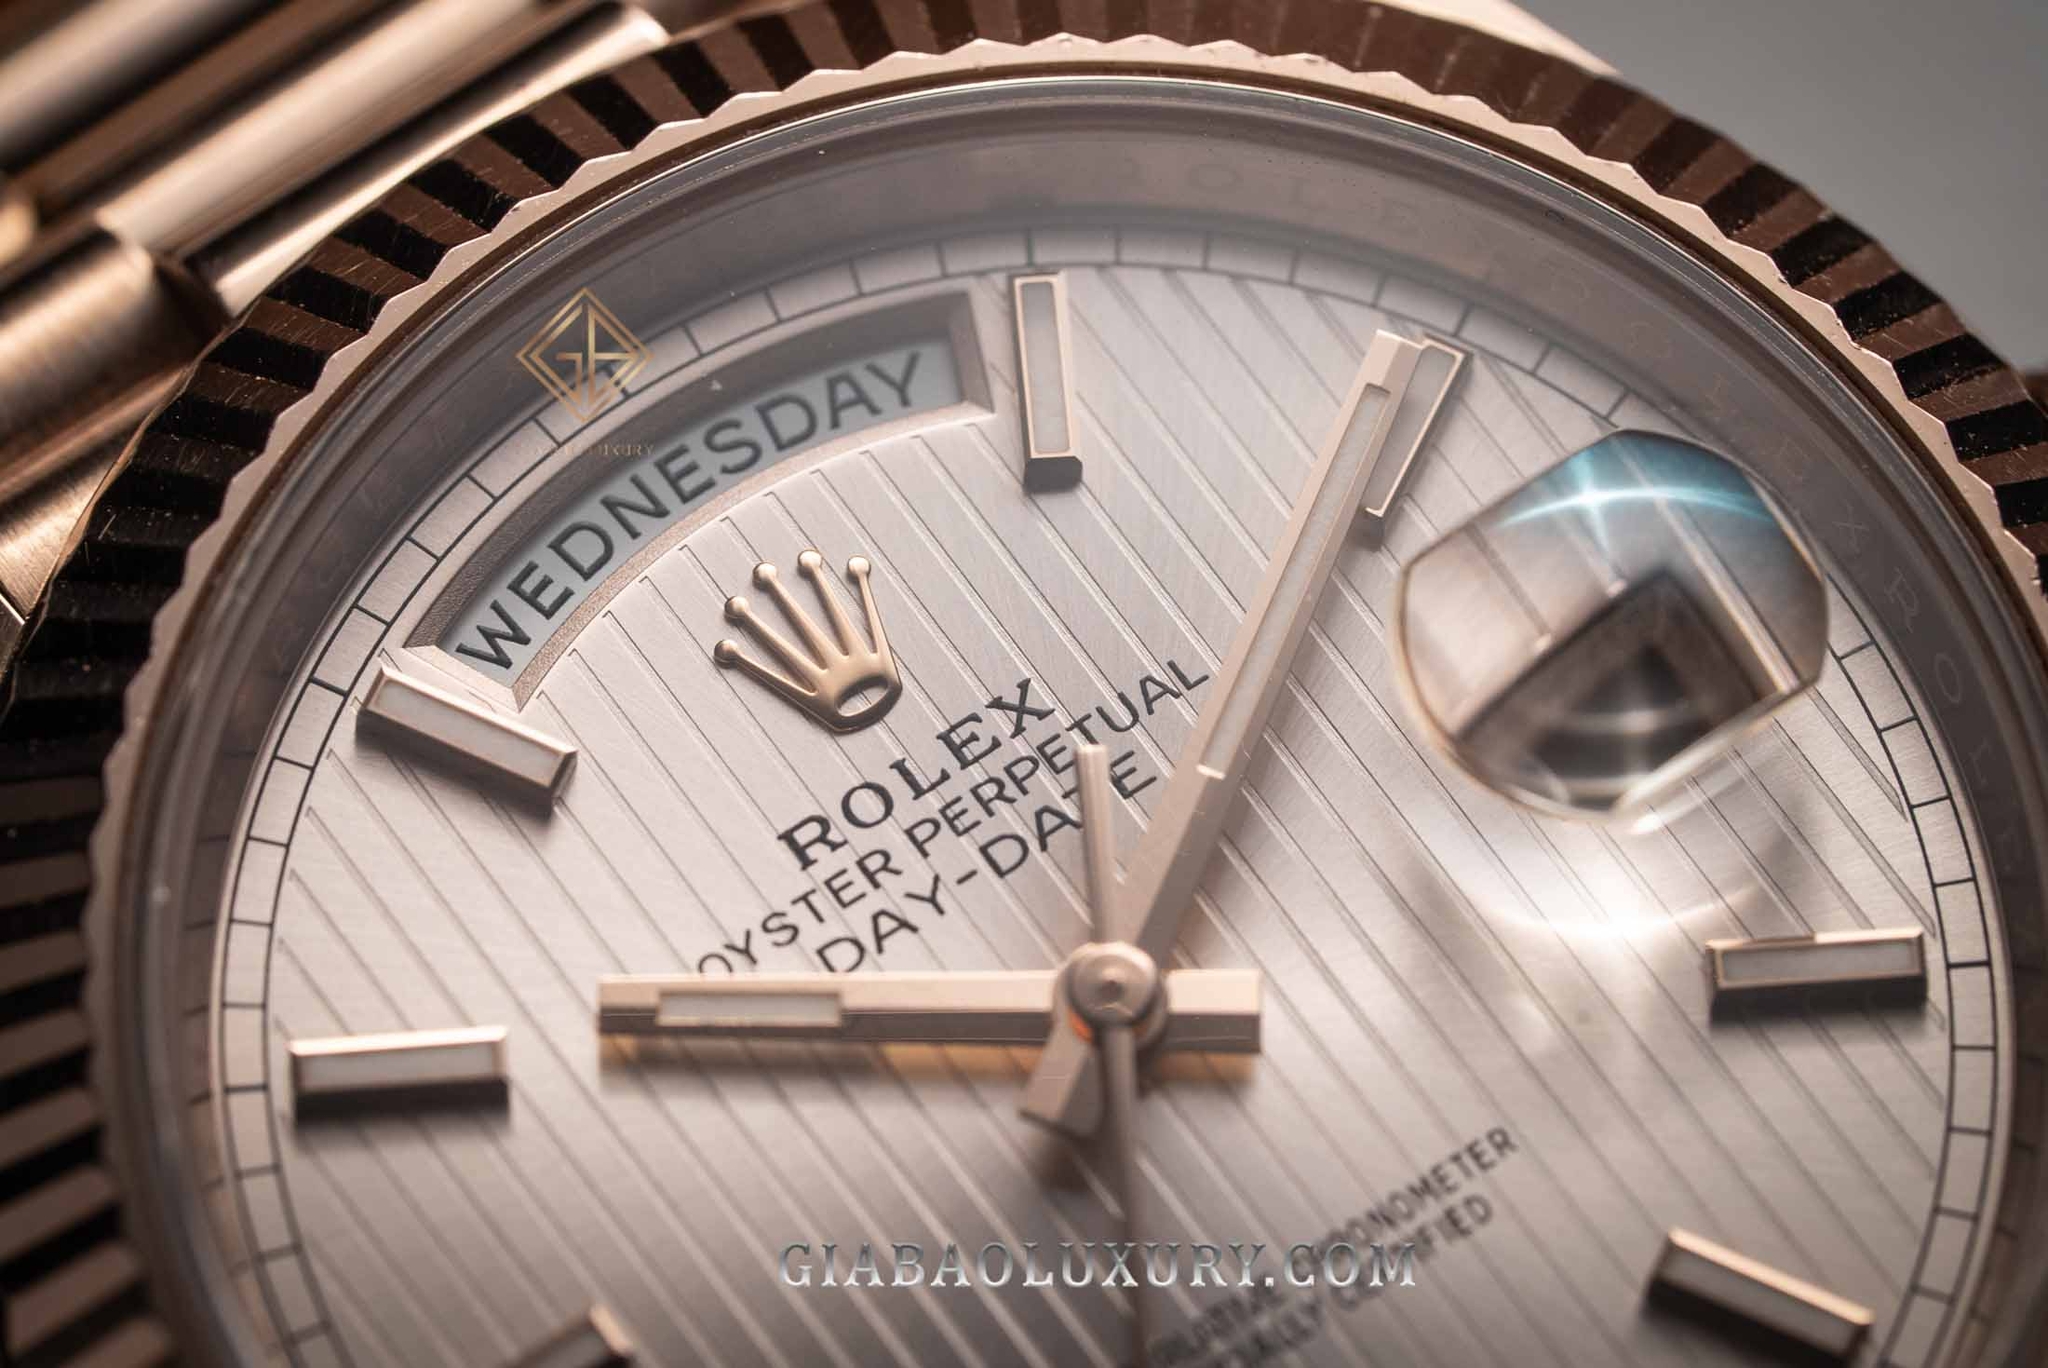 Rolex biểu tượng vương miện 5 đỉnh: Đồng hồ Rolex mang biểu tượng vương miện 5 đỉnh đang là một trong những trang sức quý giá nhất của năm